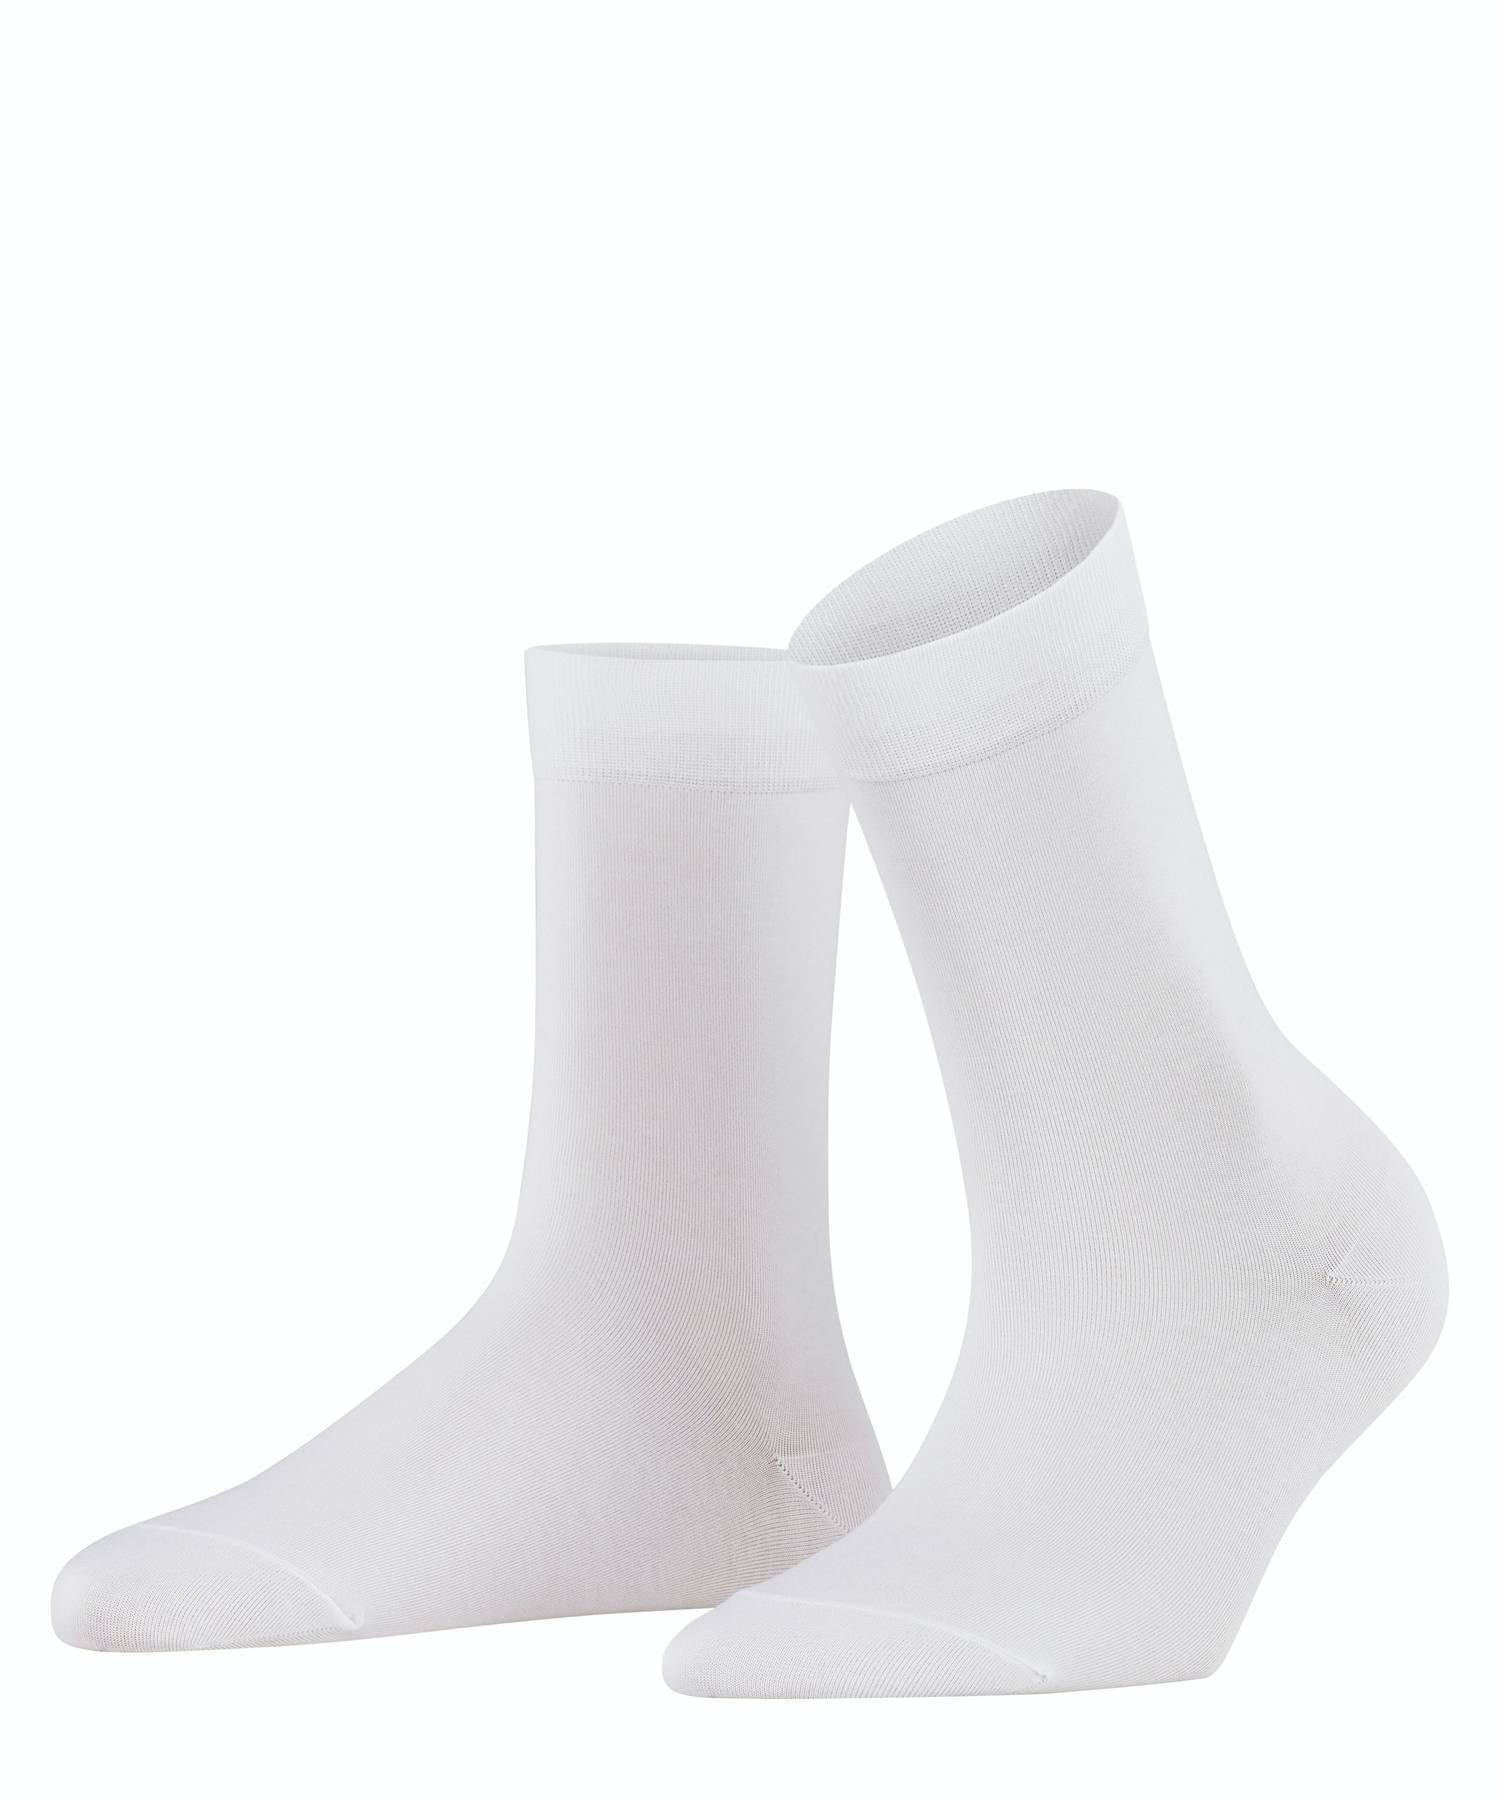 FALKE Kurzsocken Damen Socken - Cotton Touch, Kurzsocken, Knit Weiß (2009)